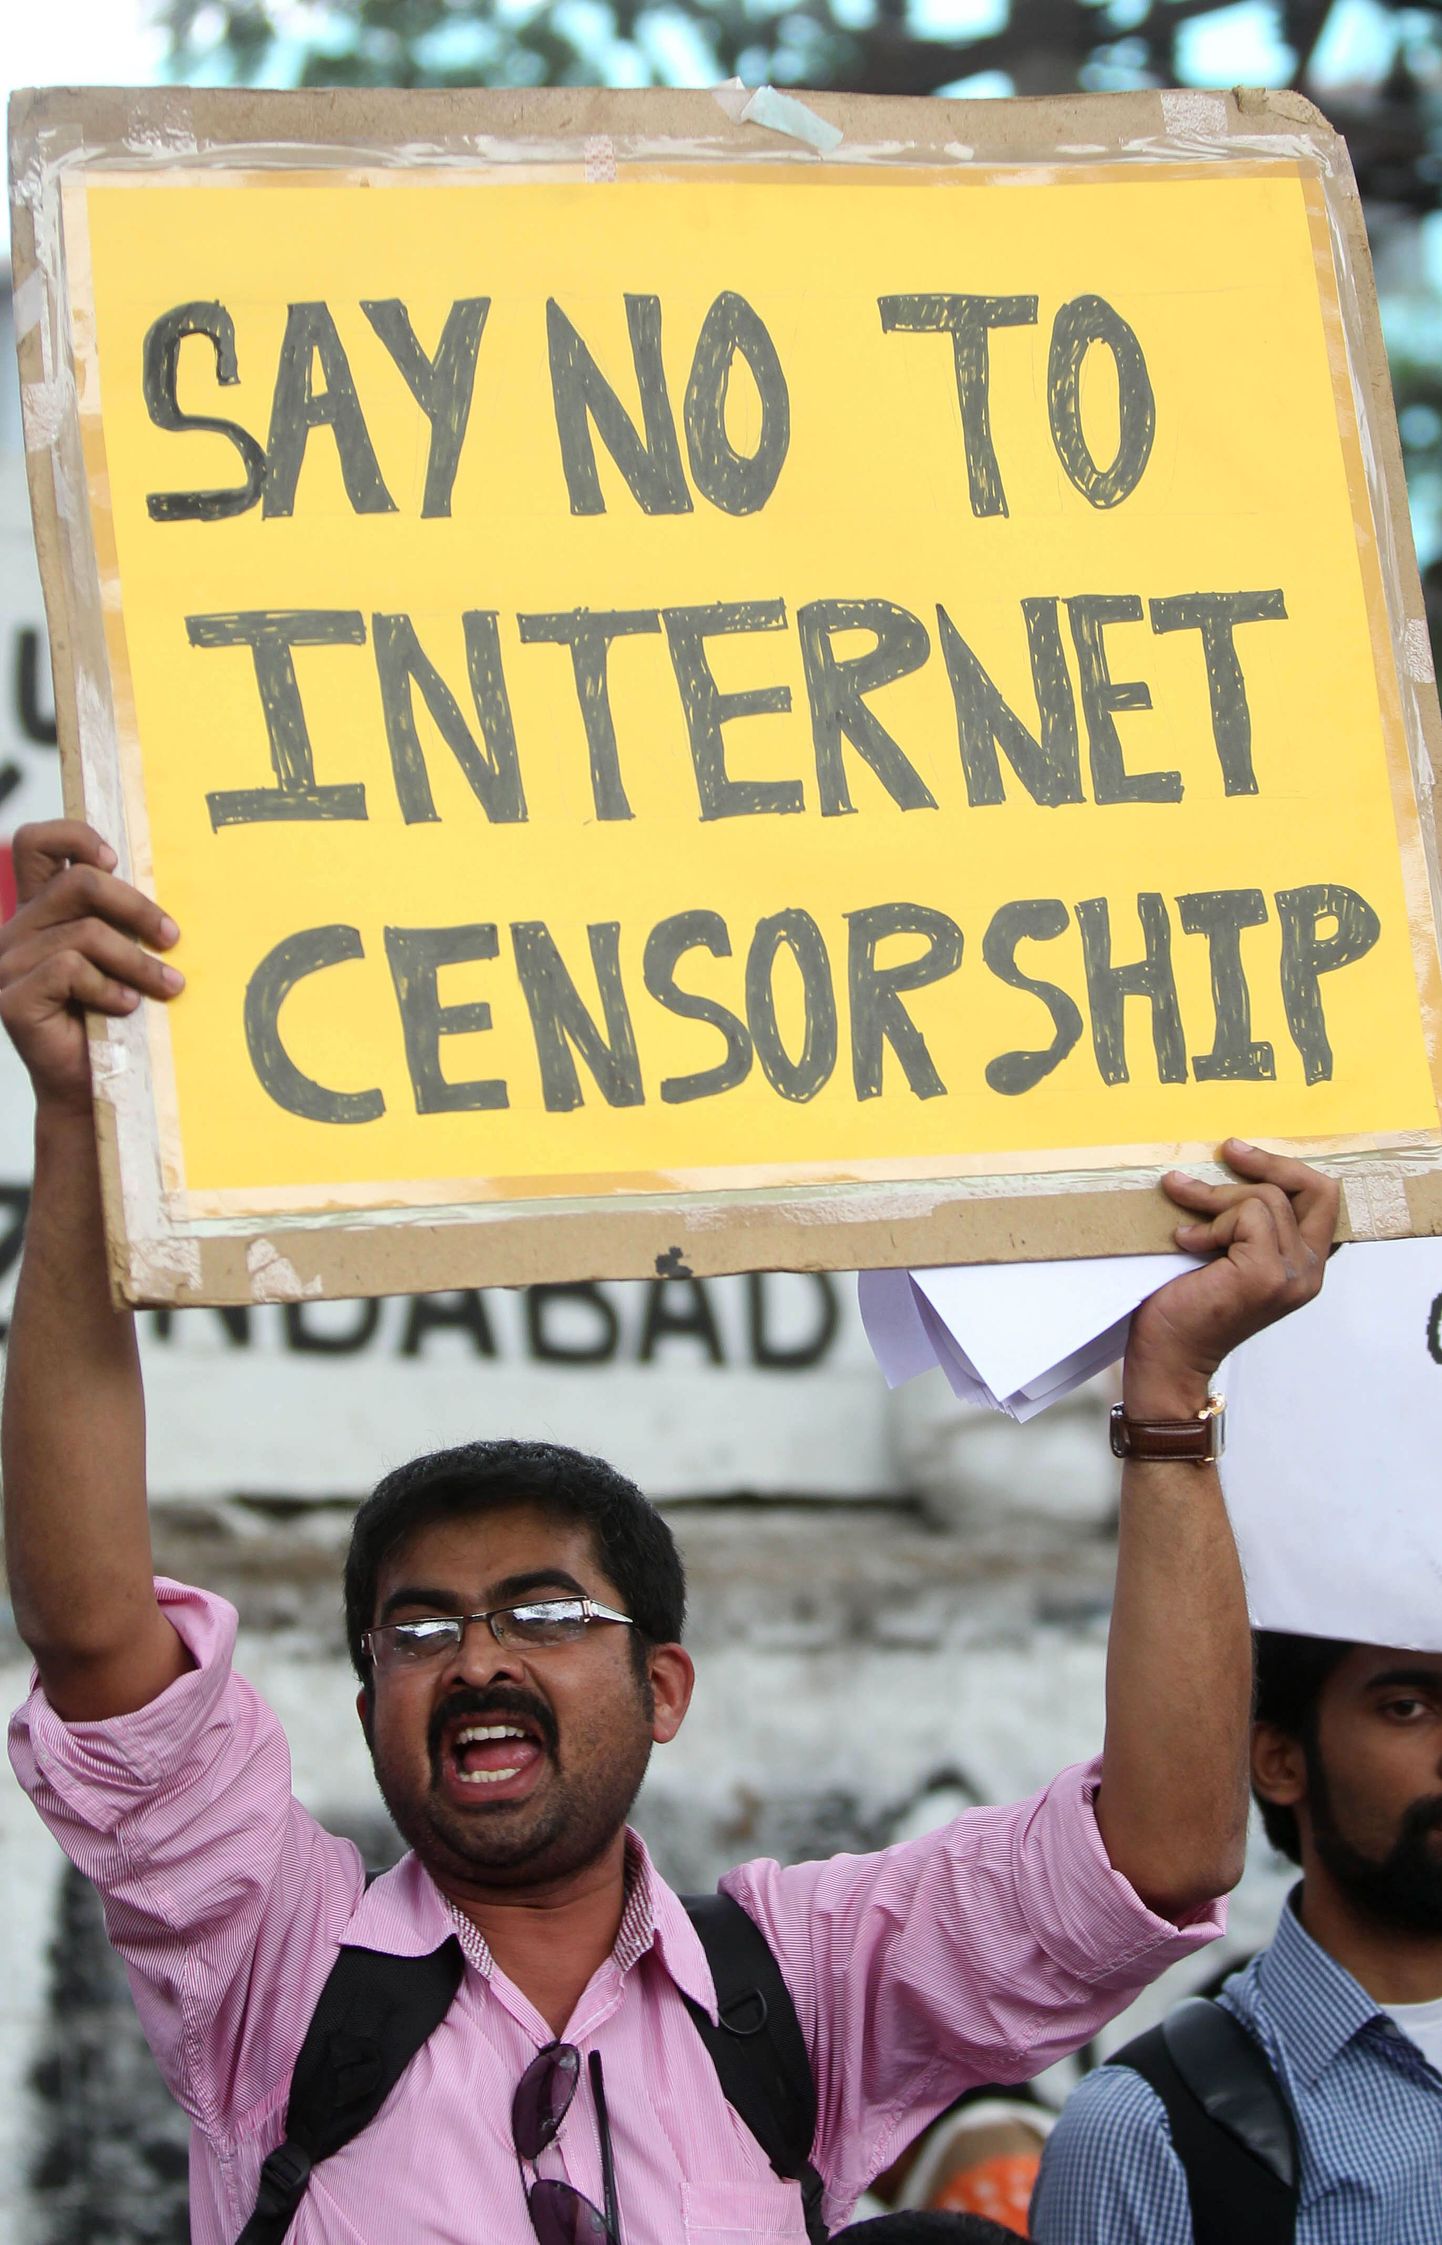 Internetitsensuuri vastu protestija.